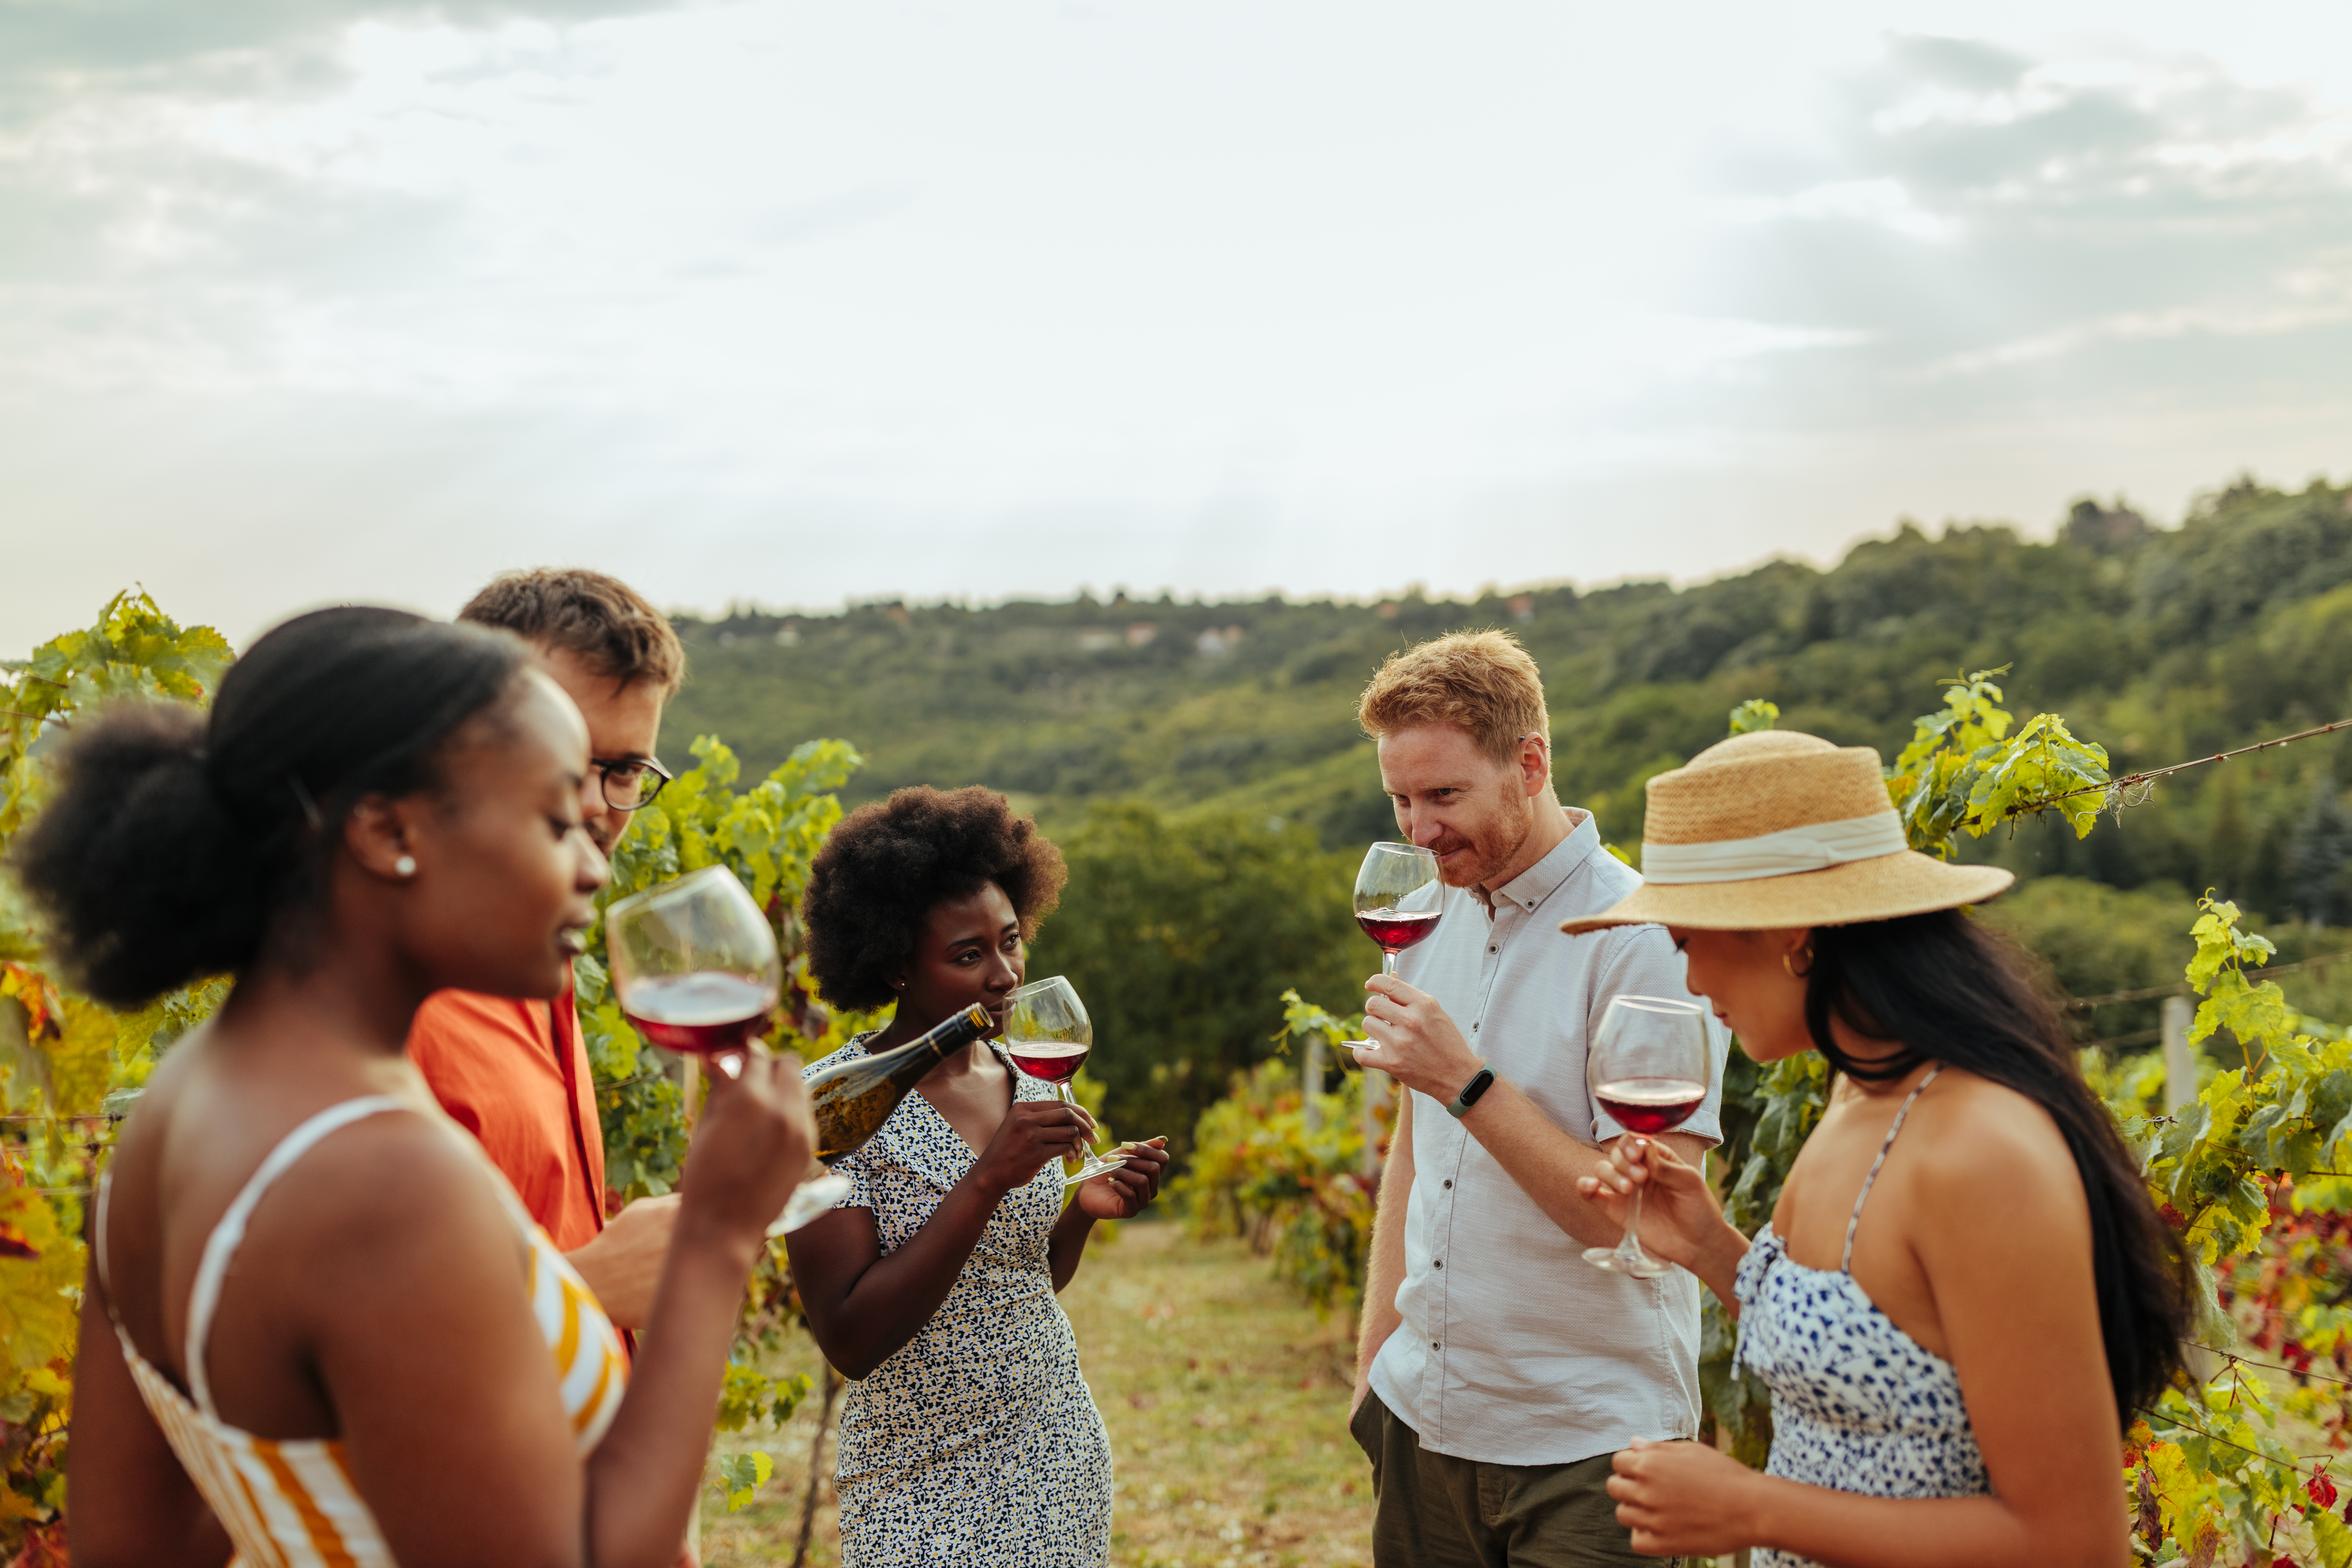 Enjoy a Wine Tasting at Vineyards Around Dallas